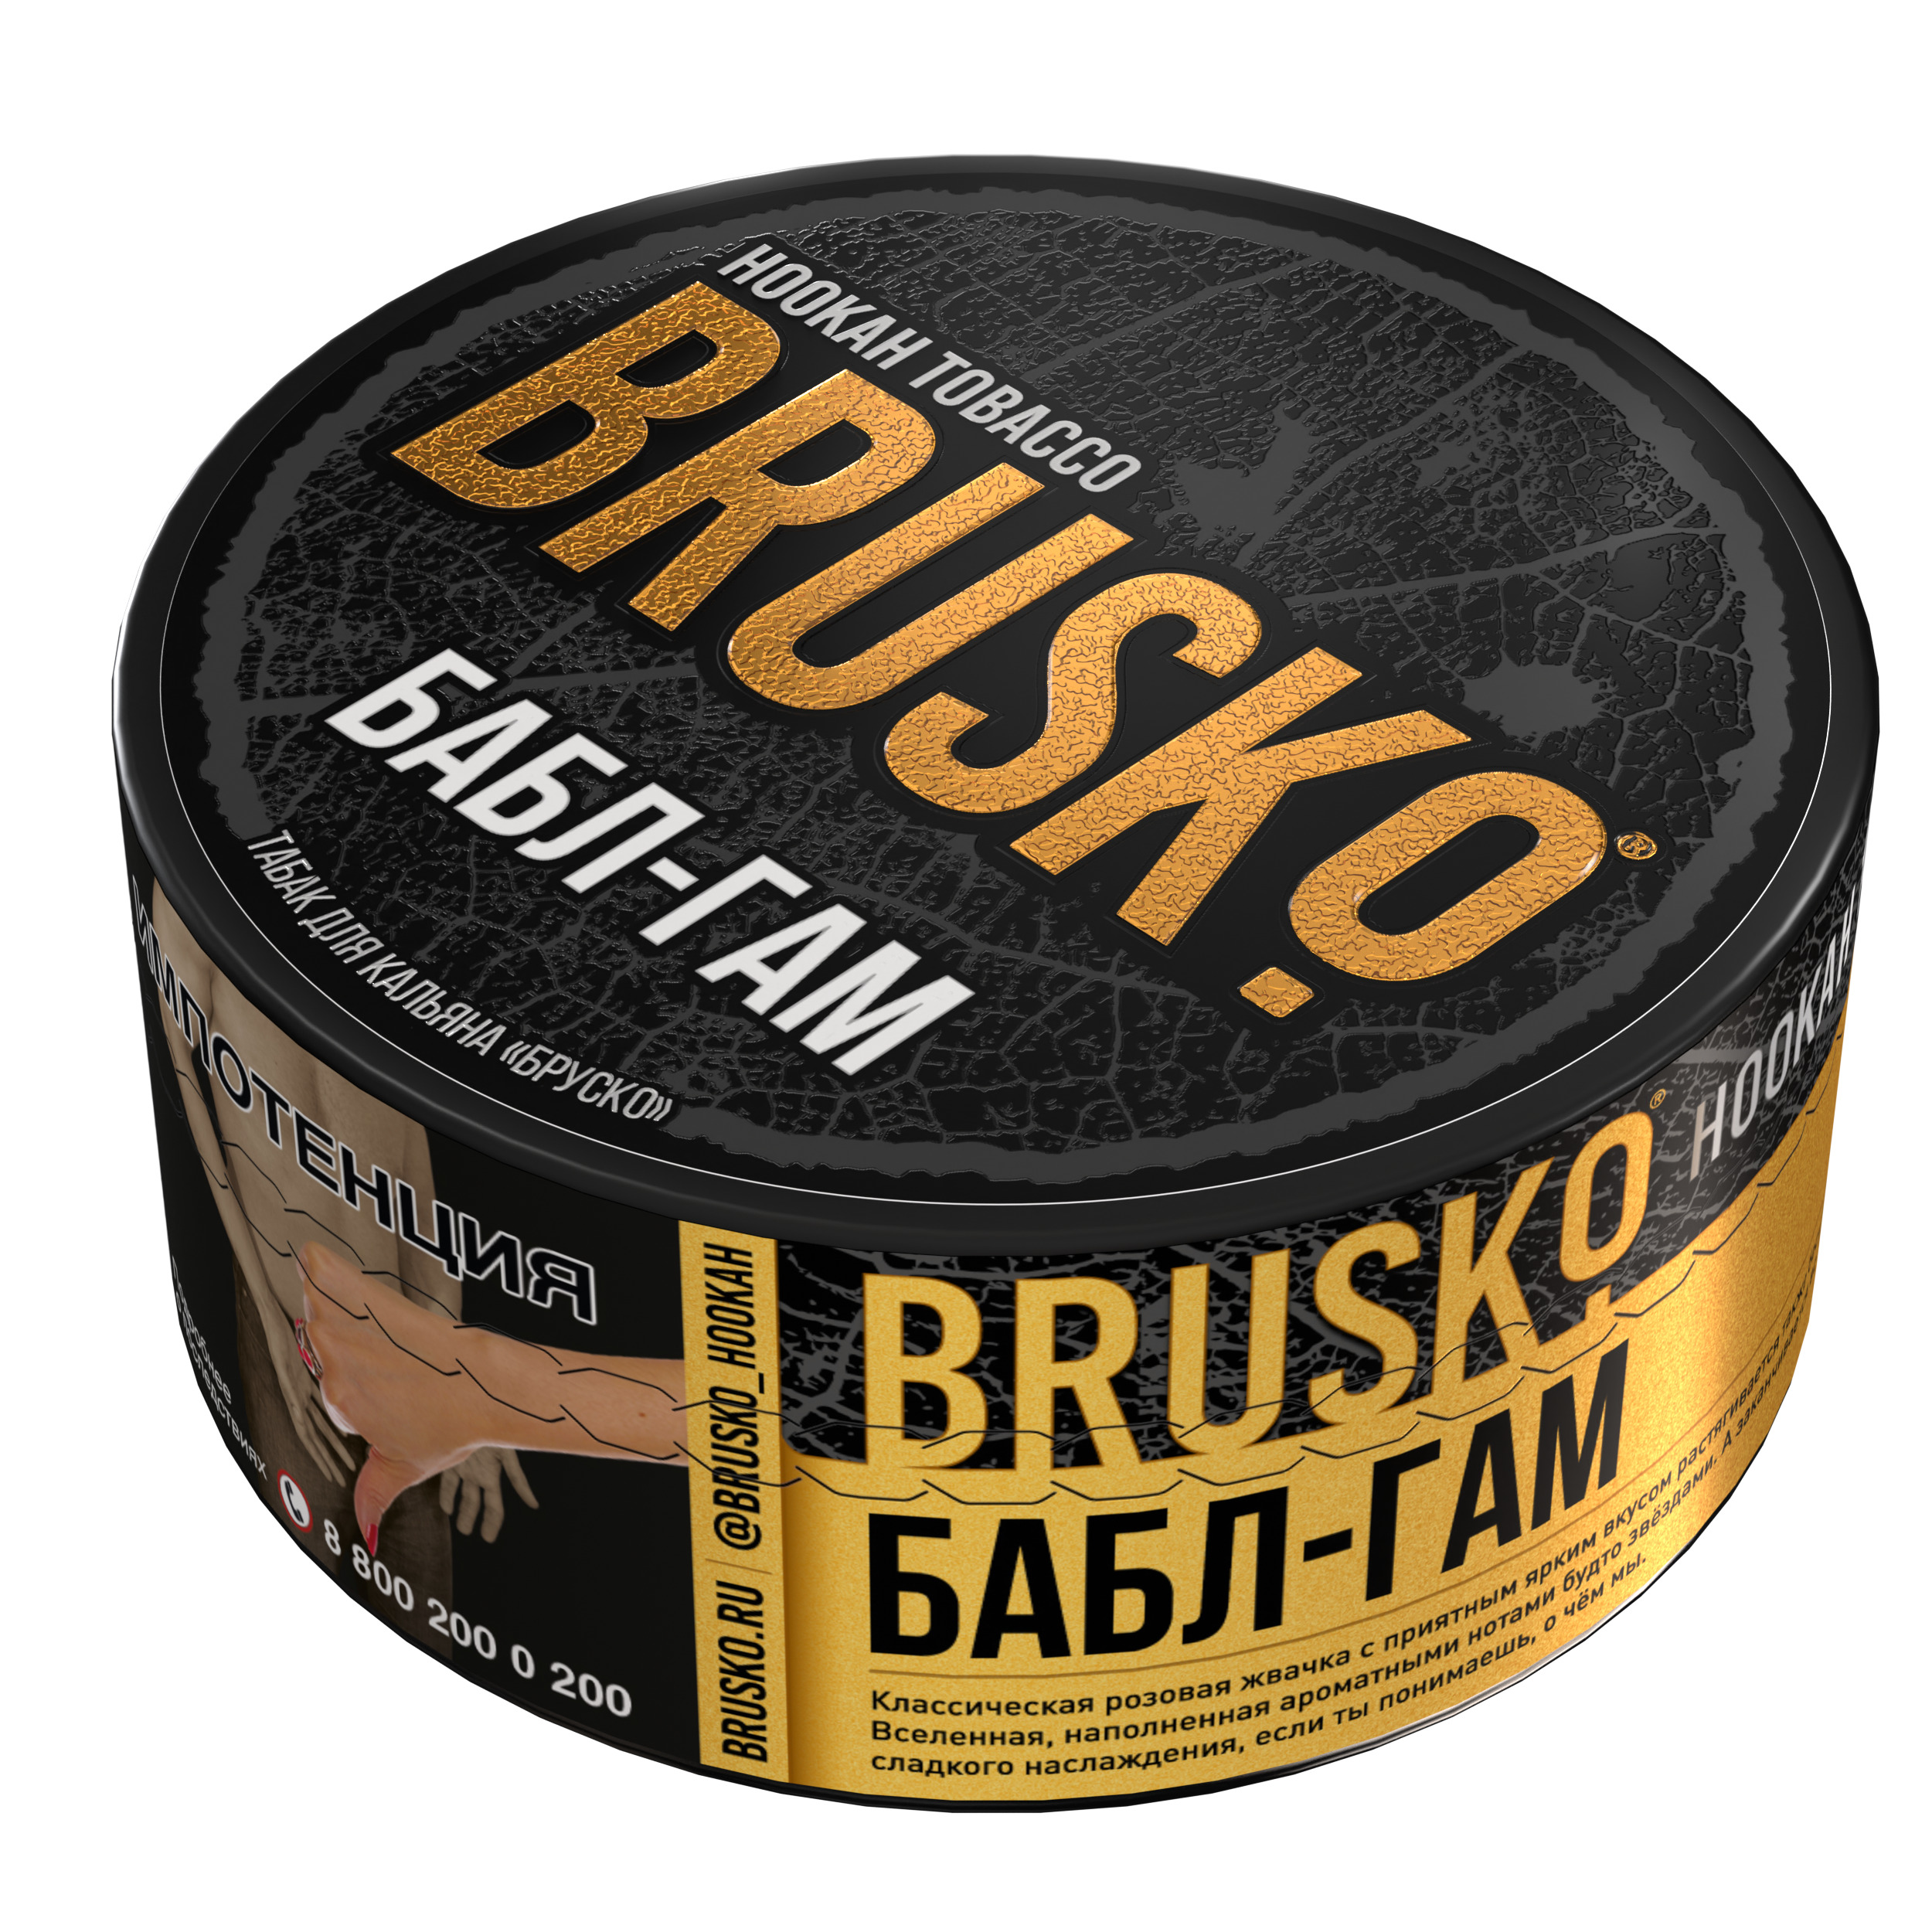 Табак для кальяна BRUSKO, с ароматом бабл-гама, 125 г.